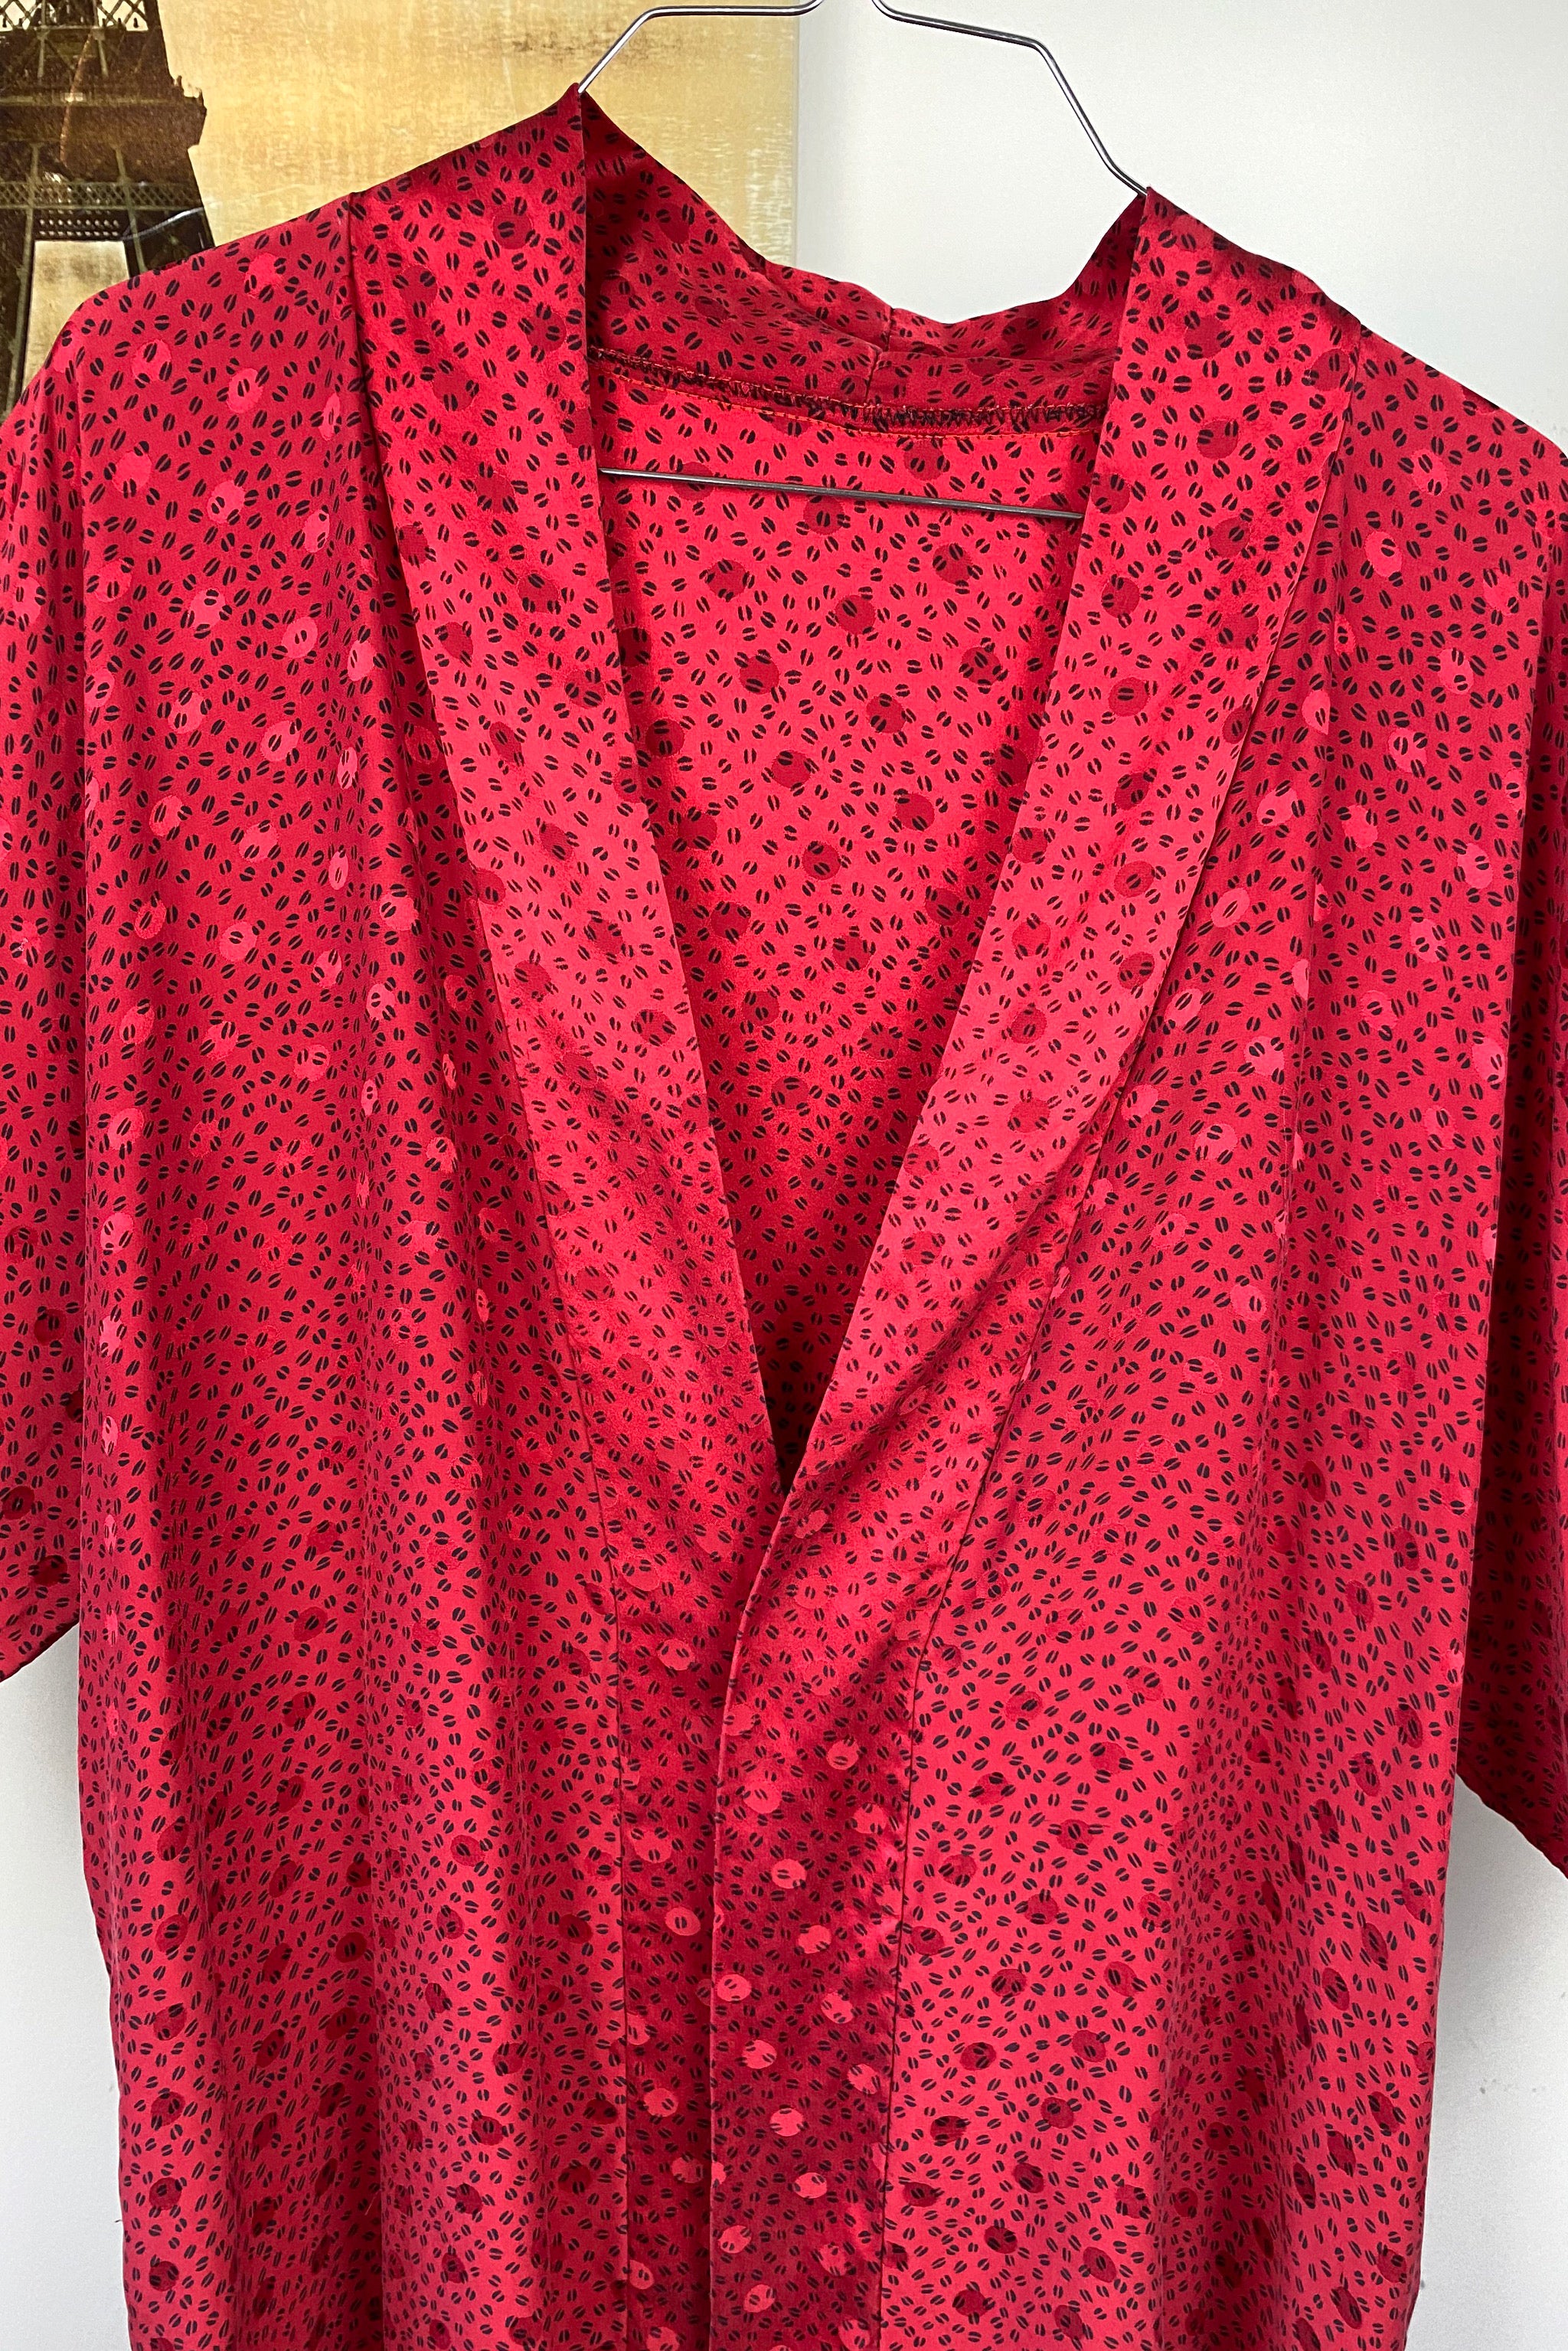 Red Vintage Kimono Robe